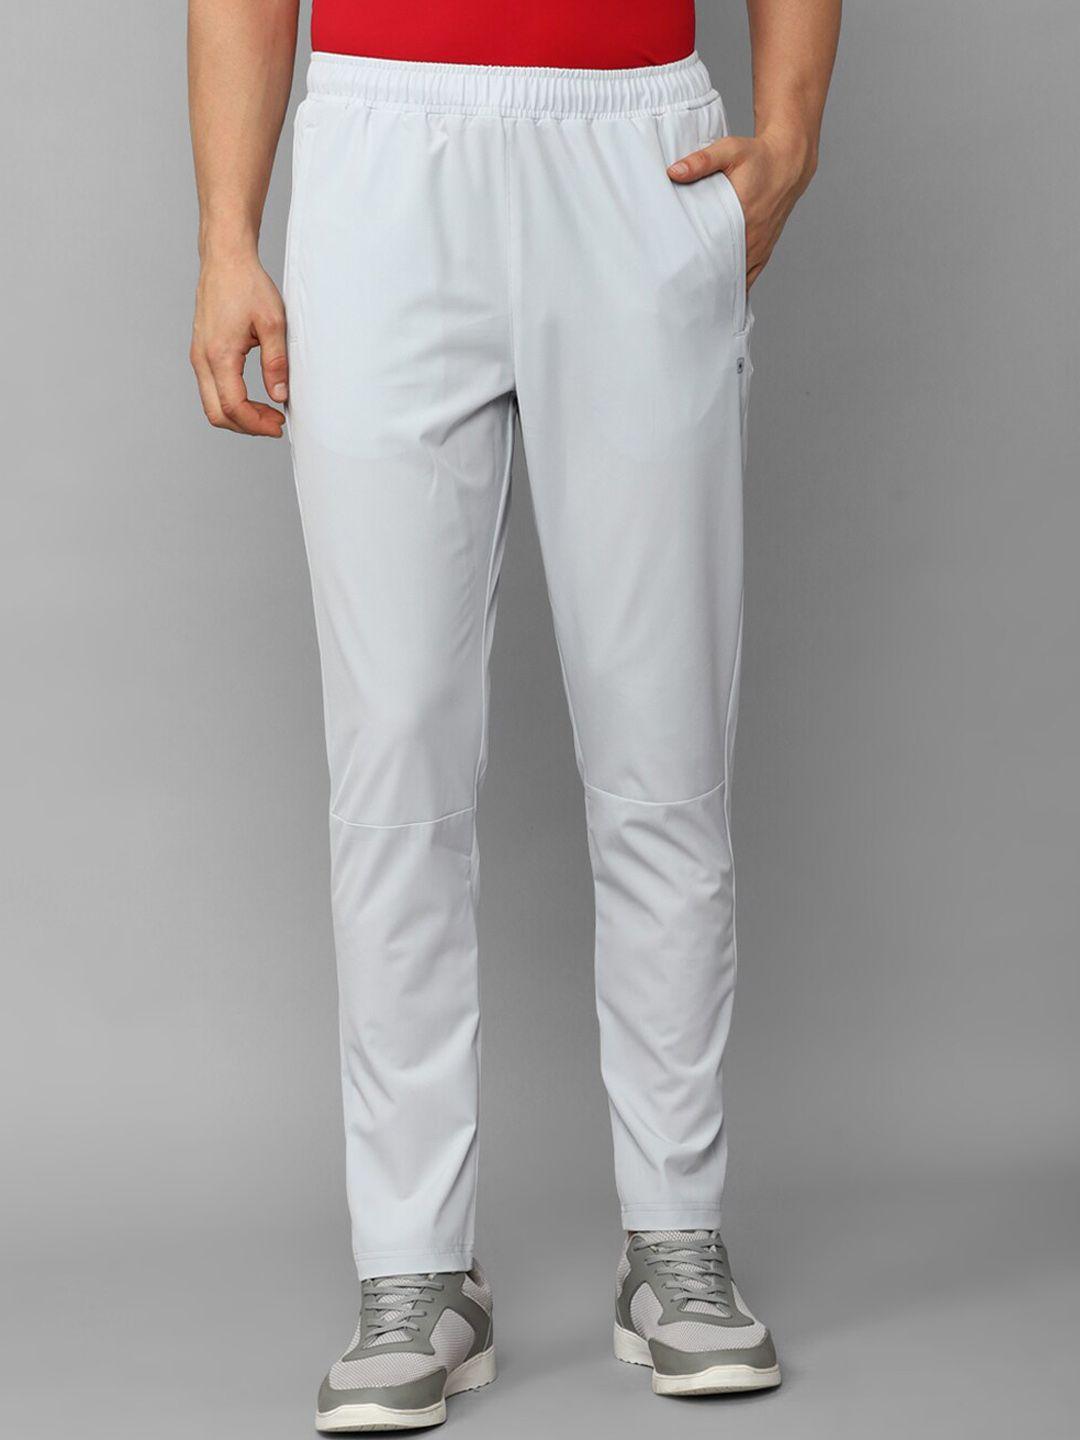 louis philippe men slim fit mid-rise cotton track pants